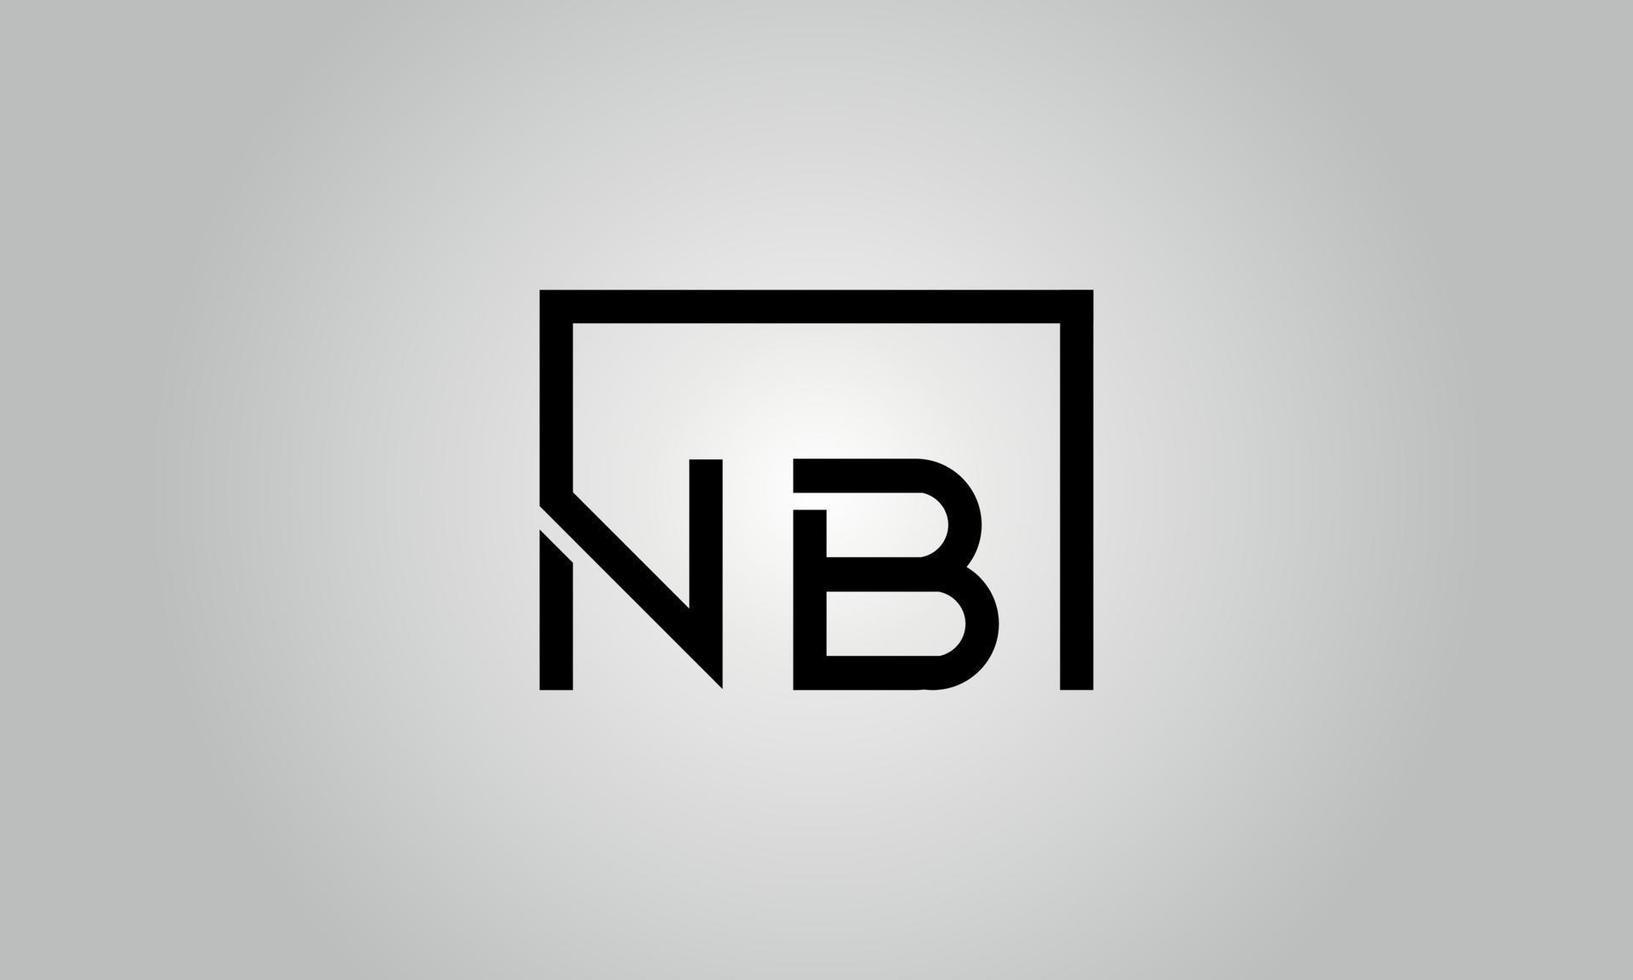 design de logotipo de letra nb. nb logotipo com forma quadrada em cores pretas modelo de vetor livre.